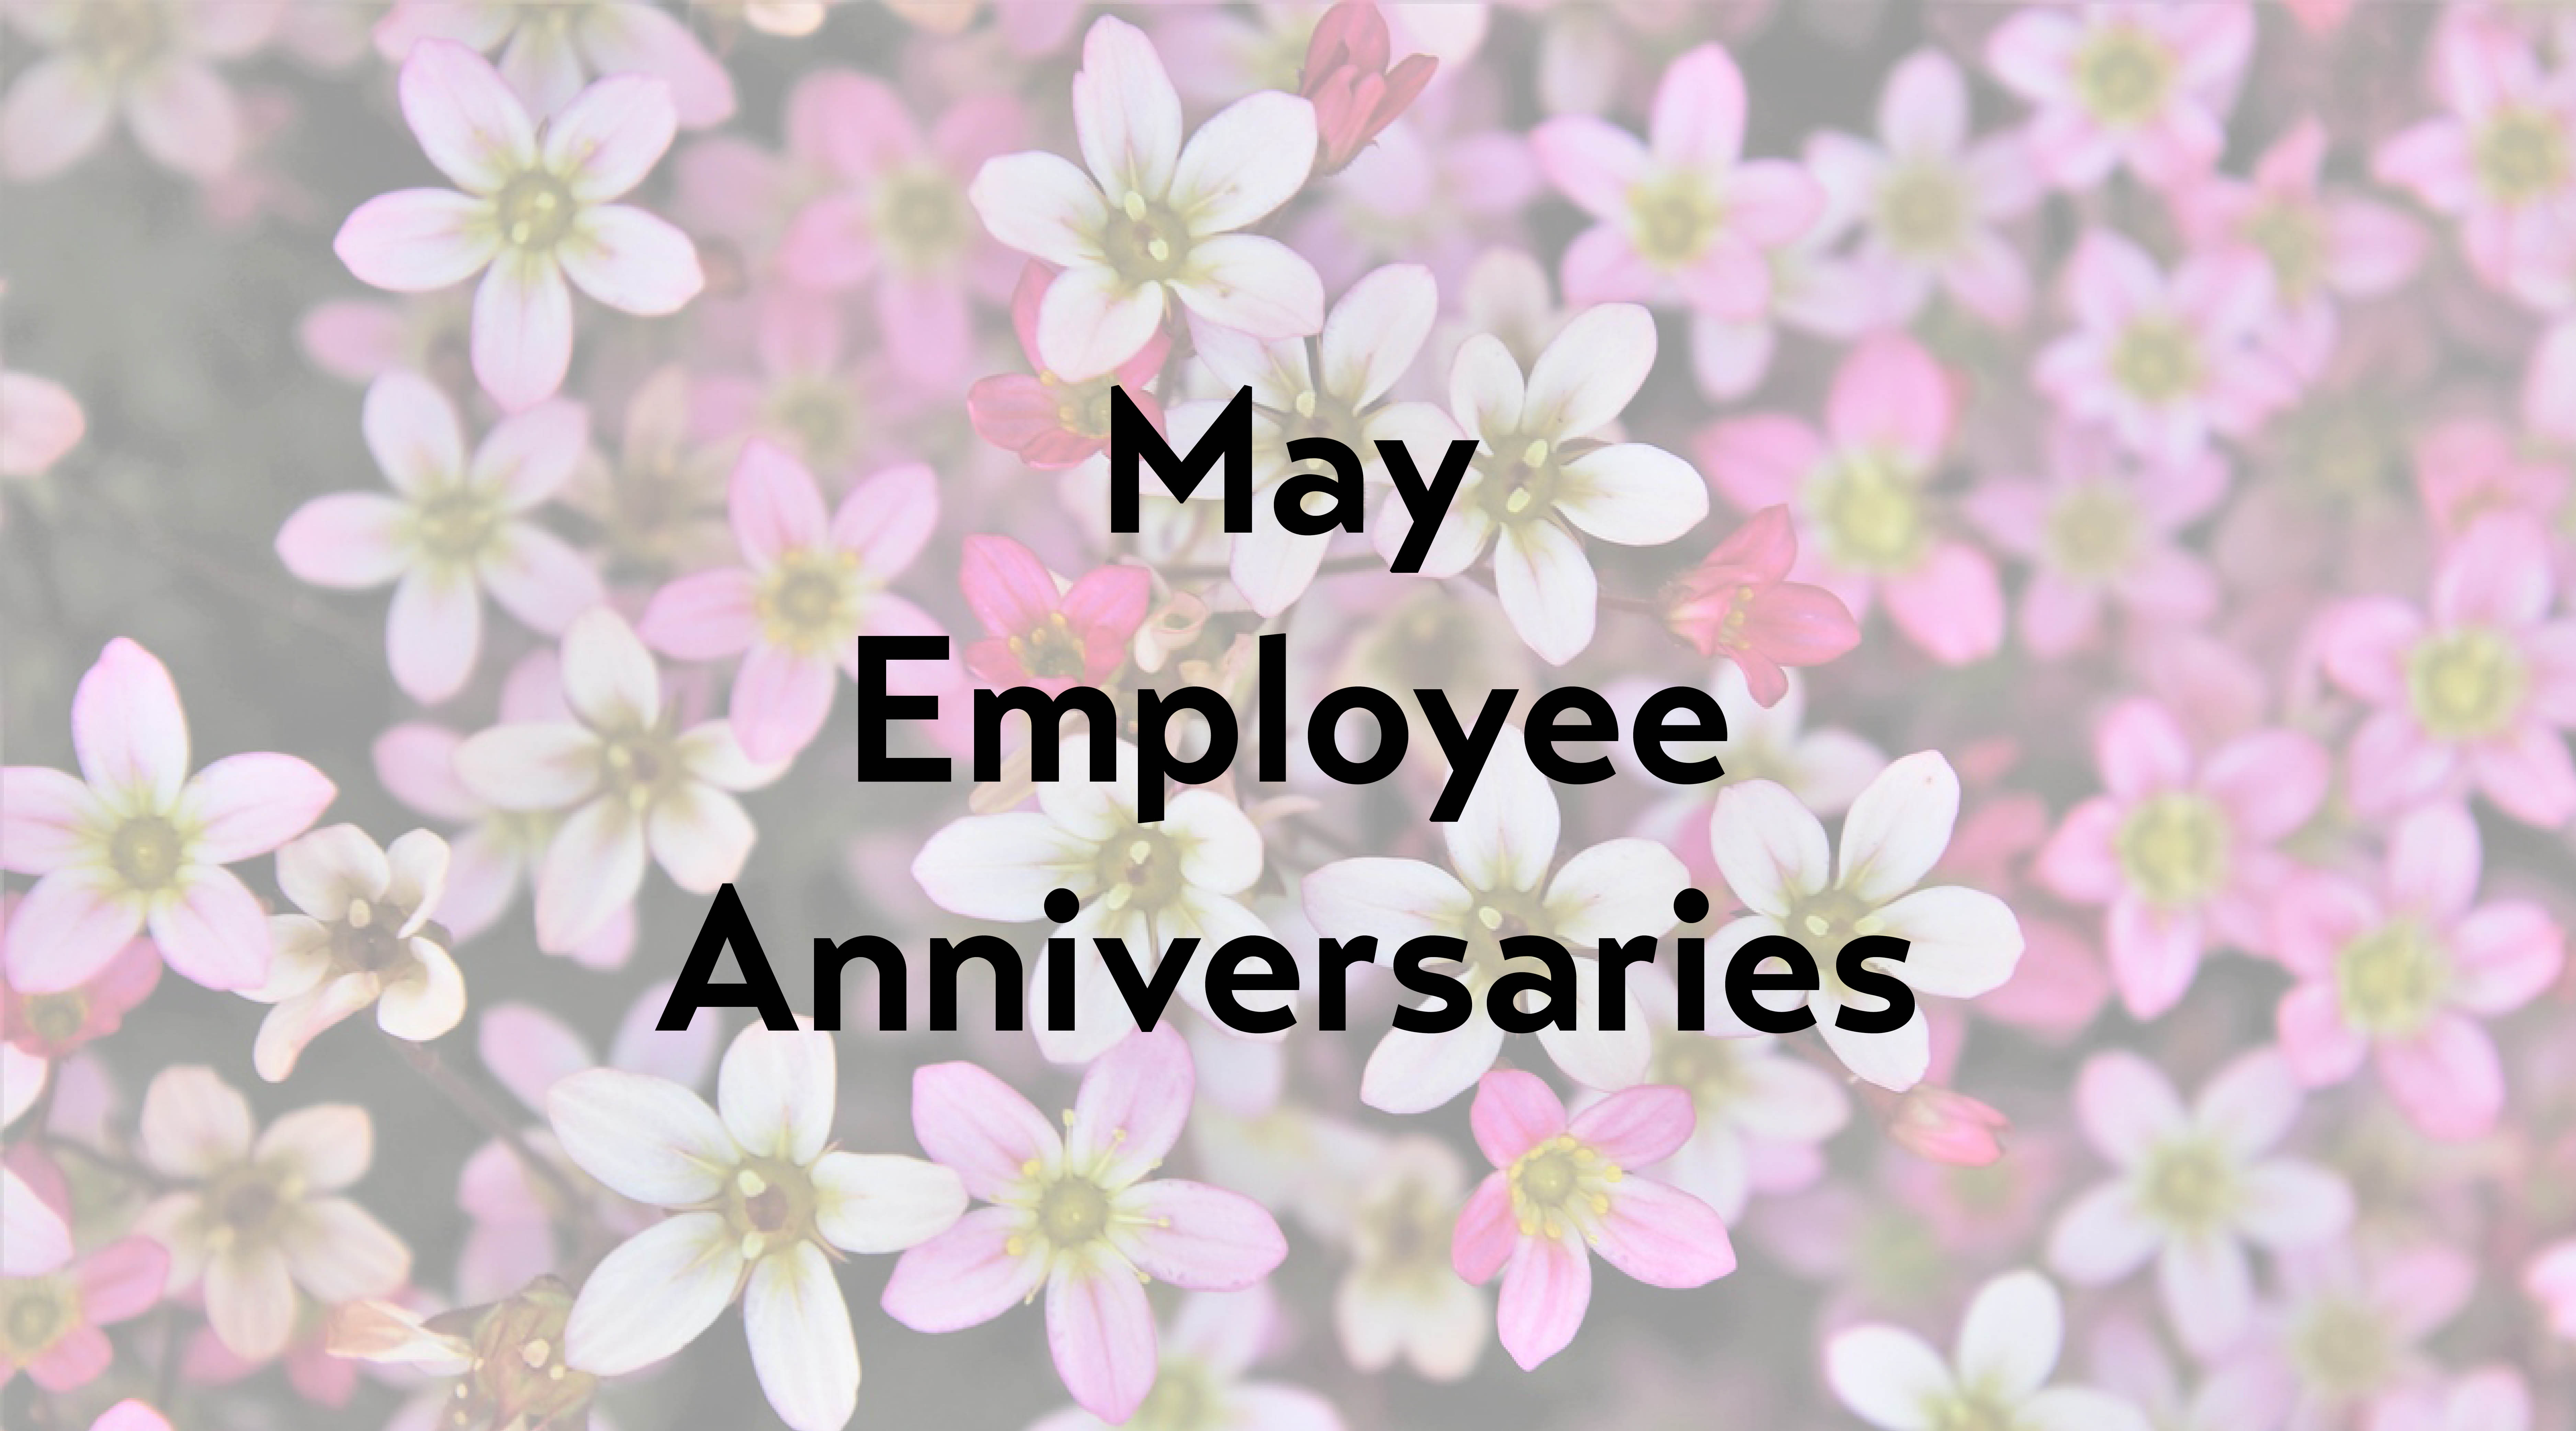 May Employee Anniversaries